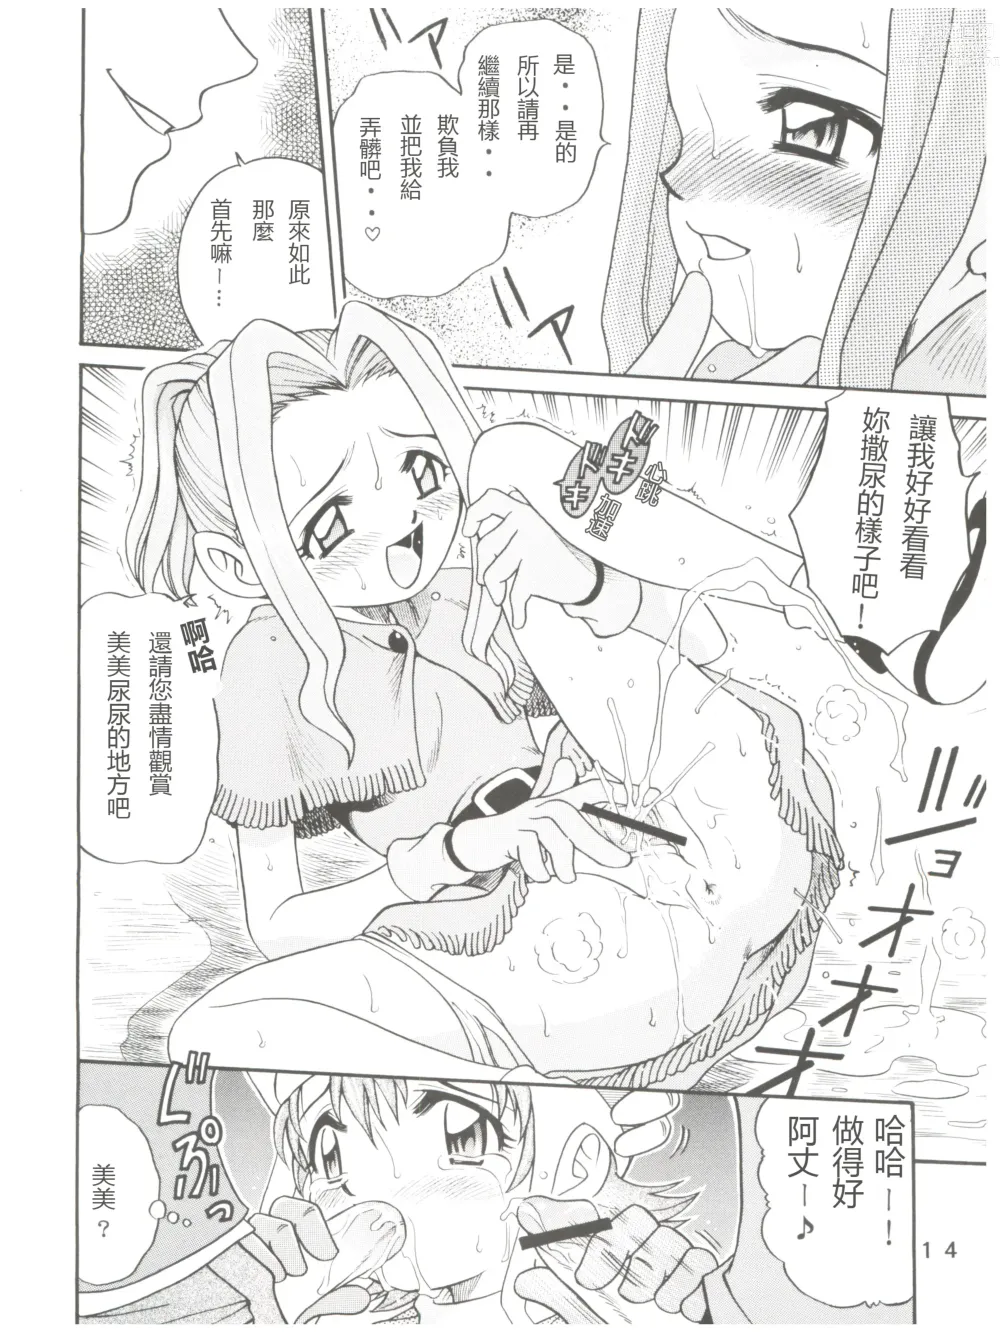 Page 14 of doujinshi Pichuu Pikachuu Daigyakusatsu